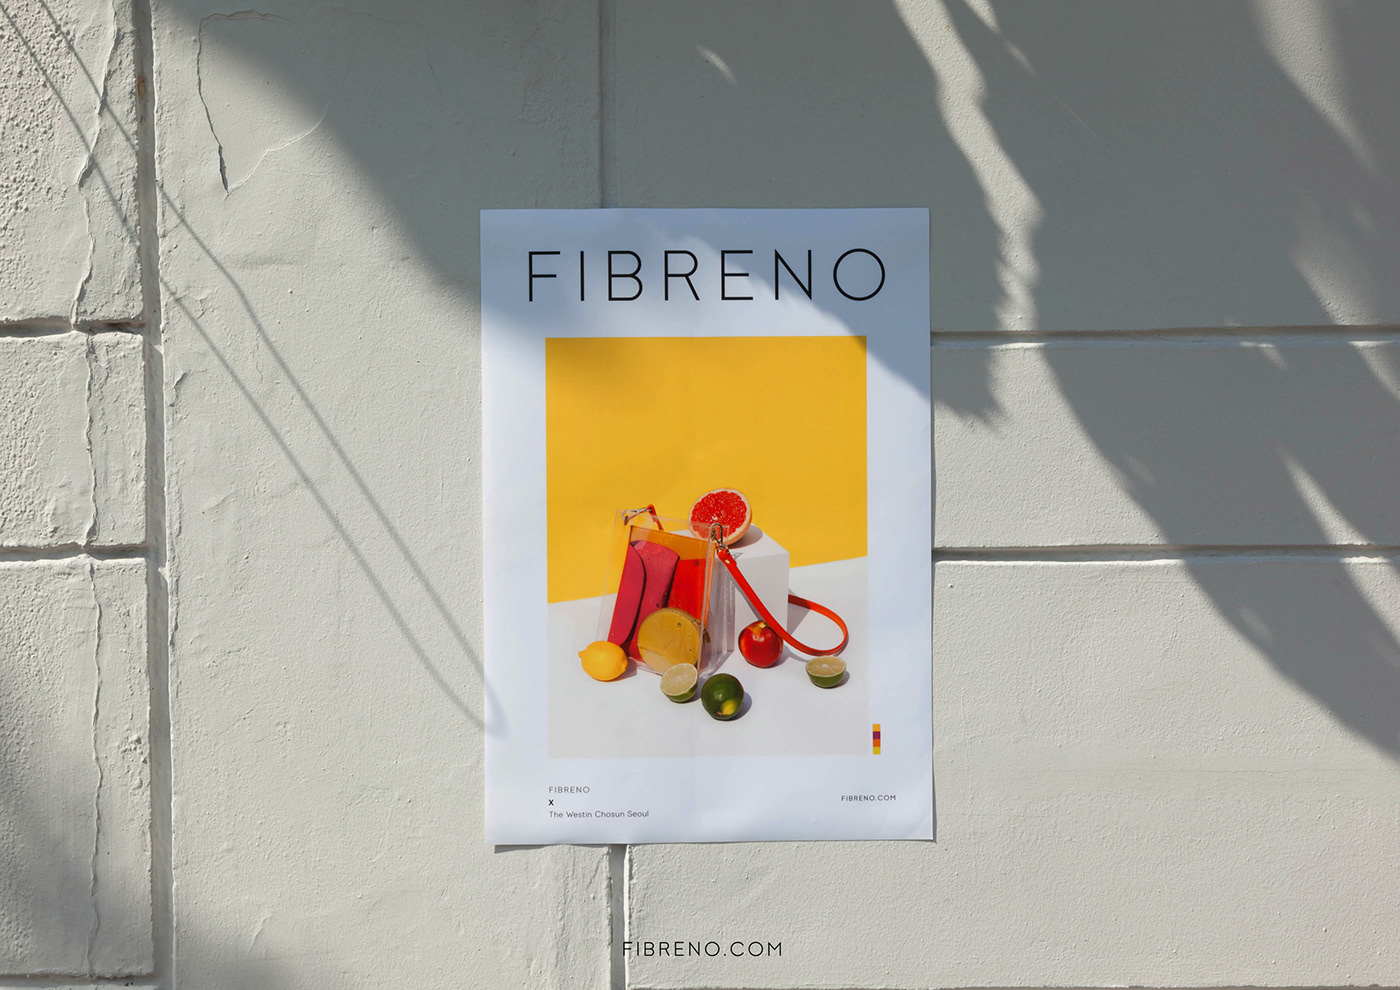 기업선물 디자인  브랜딩 branding  corporatedesign graphicdesign design 그래픽디자인 fibreno 피브레노